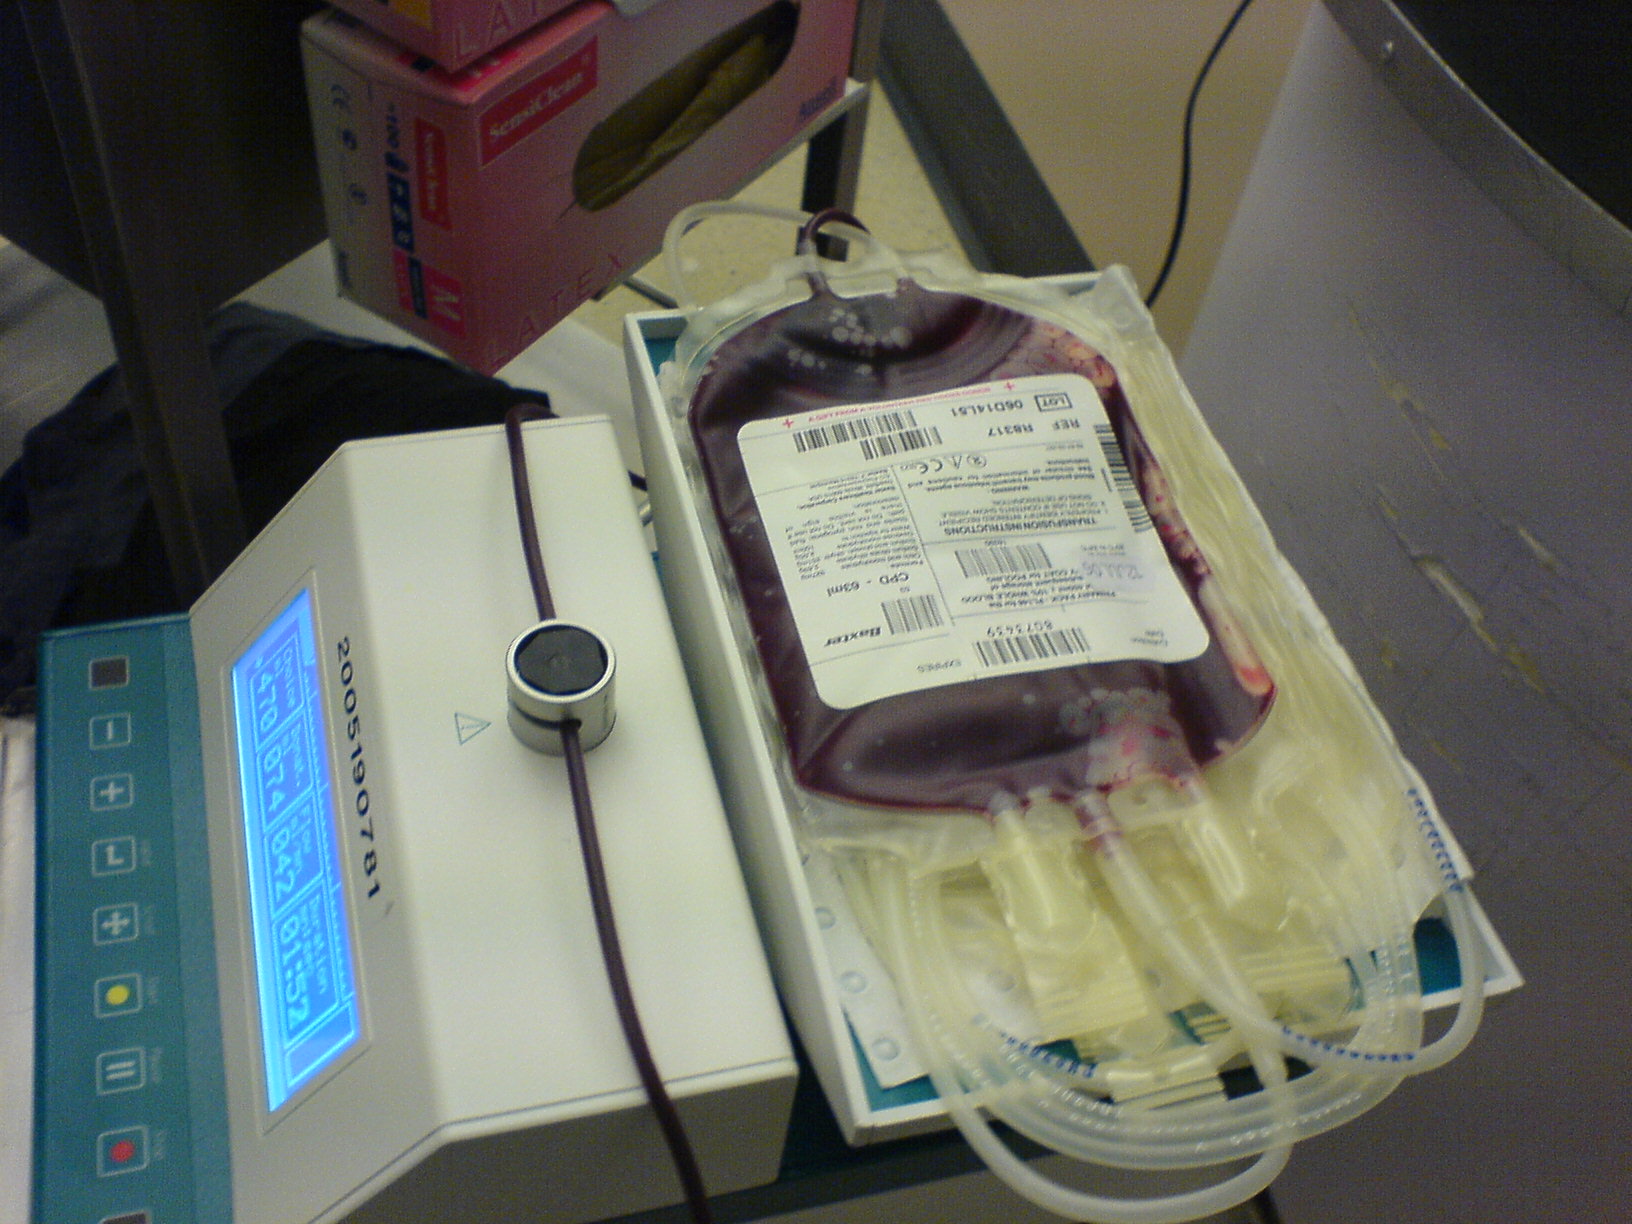 Sangre-Dorada-Tipos-Donacion-Salud-Donar-Donadores-Tipos-Raro-compatibilidad-existen-mas-raros, Ciudad de México, 18 de abril 2019